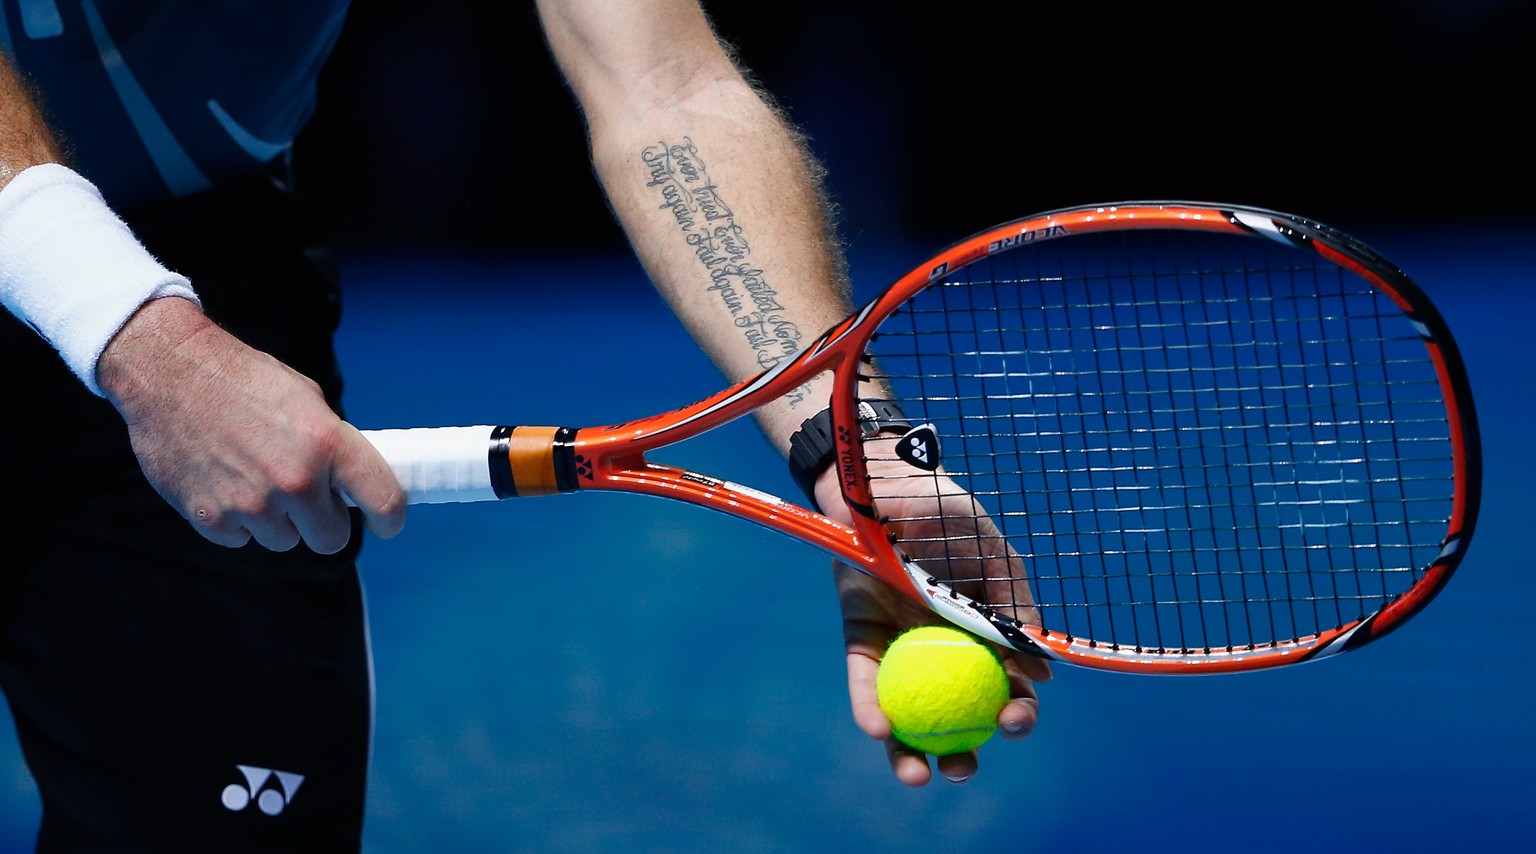 Seit dem Sieg gegen Novak Djokovic am Australian Open weltbekannt: Wawrinkas Tattoo auf dem Unterarm. Bodigt der Romand den Serben heute erneut?